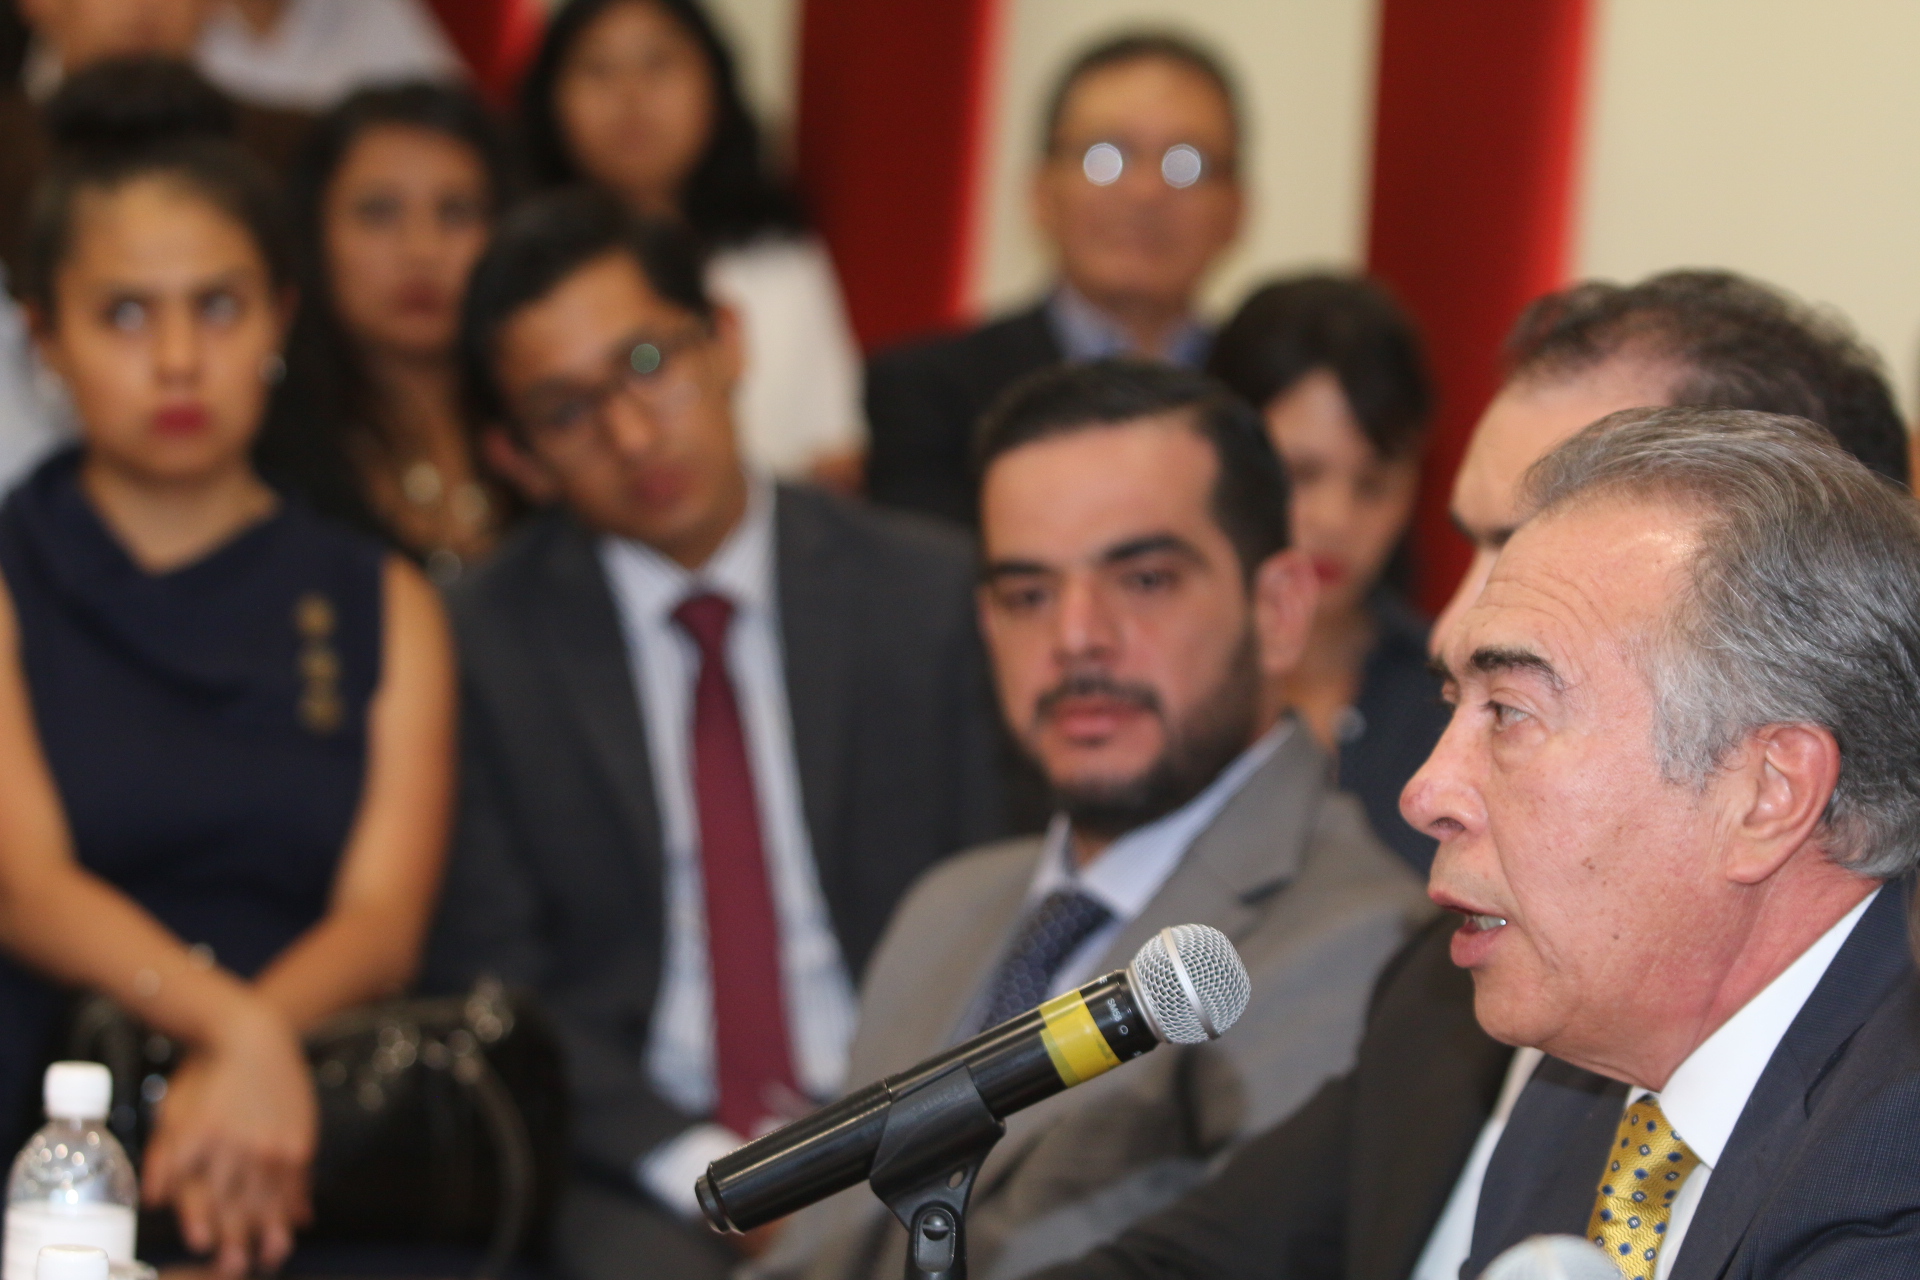 Conferencia que impartió el Mtro. Jorge Alberto J. Zorrilla R., en la Universidad Iberoamericana, en el Estado de Puebla. 22 de junio de 2017.